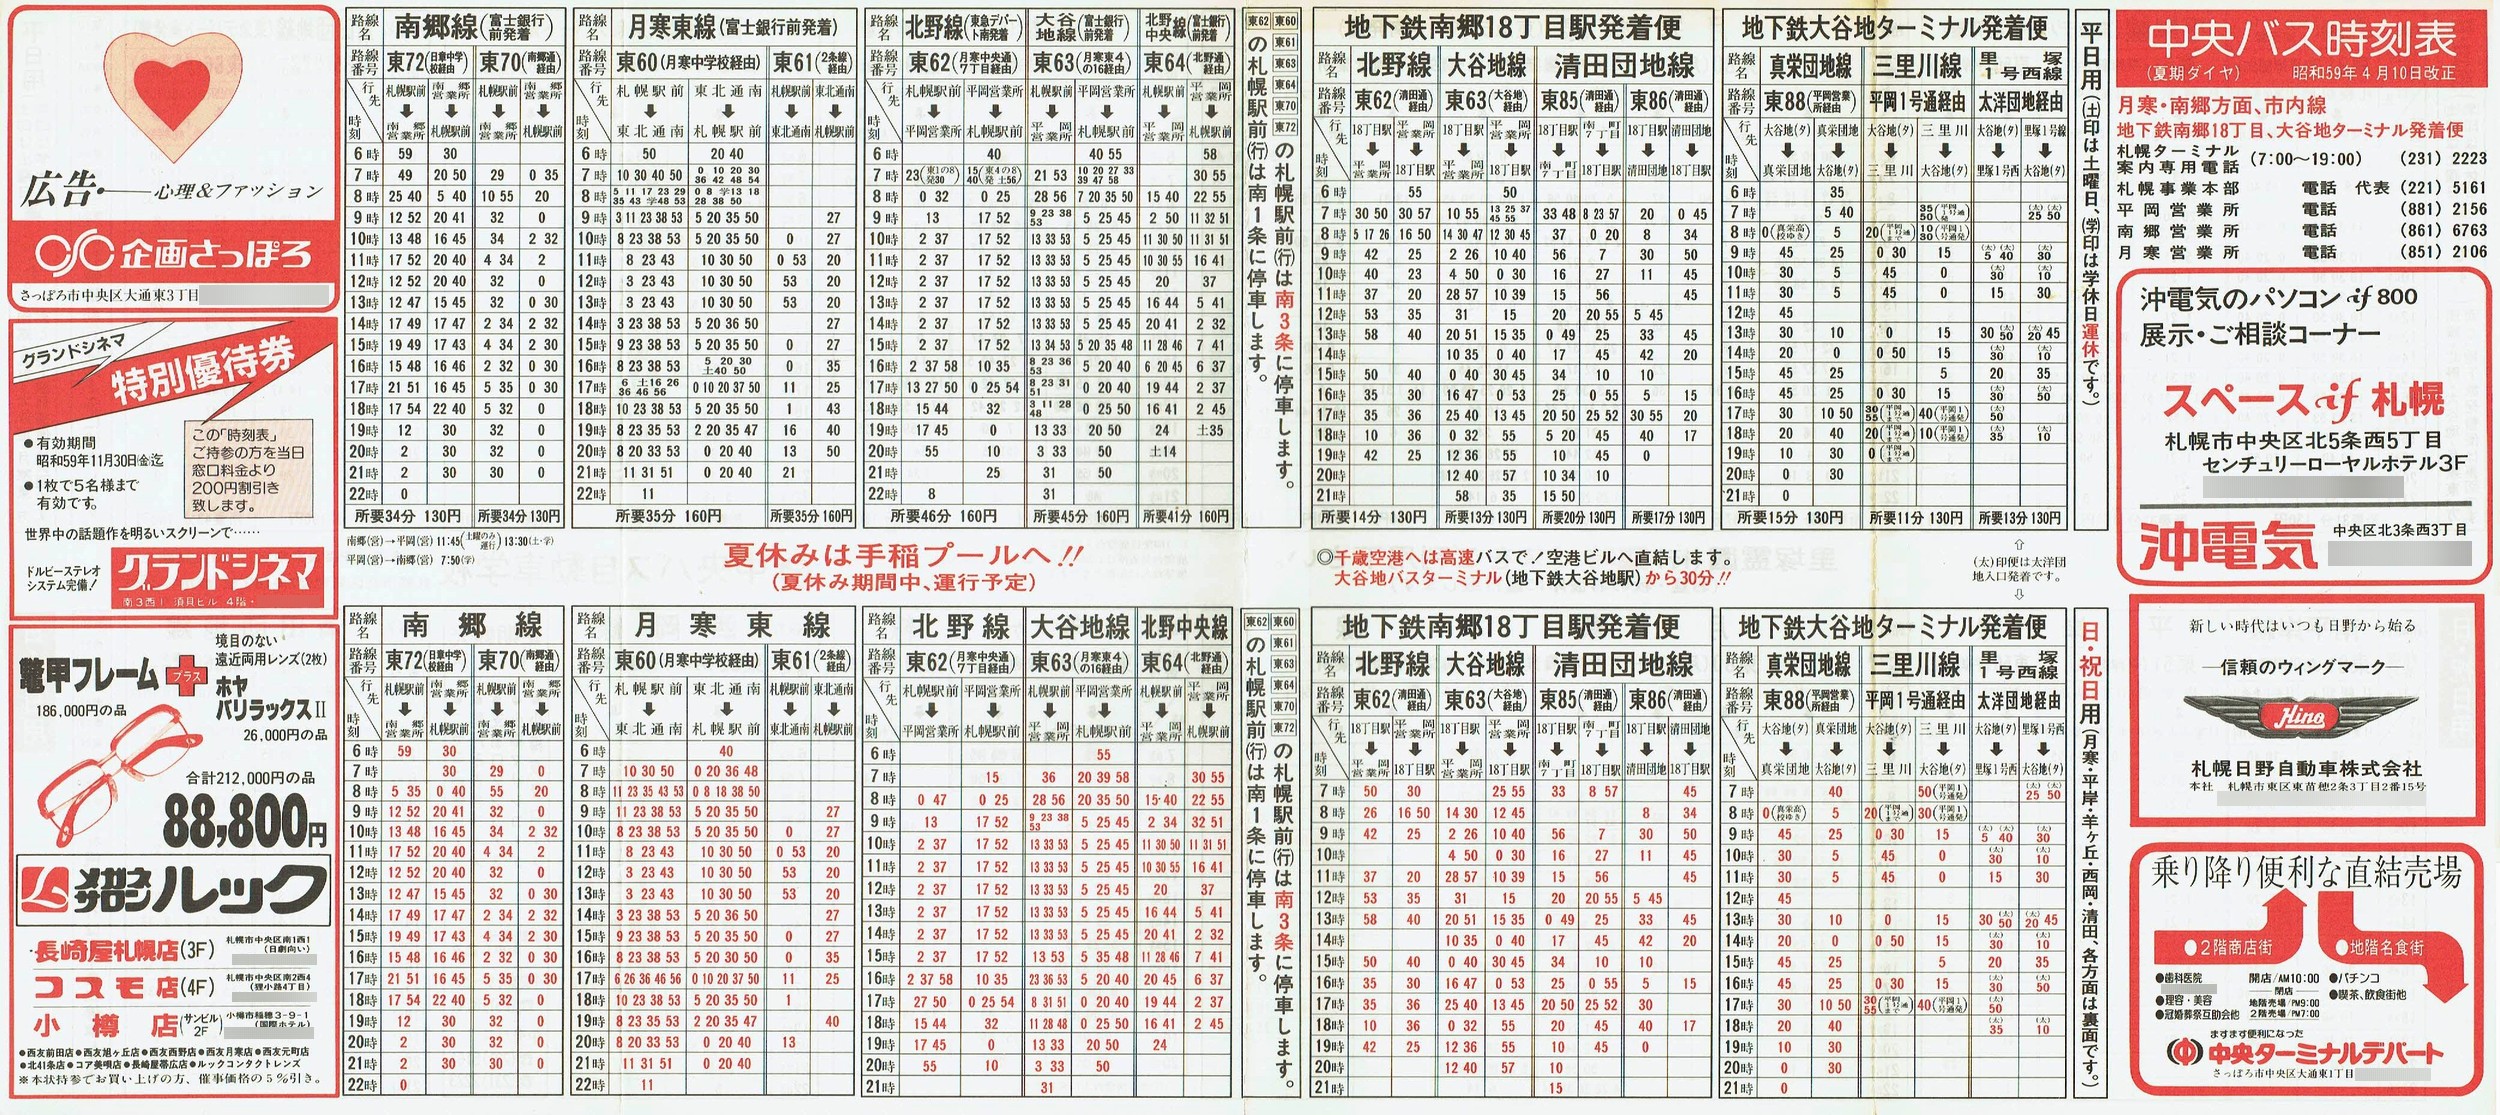 1984-04-10改正_北海道中央バス(札幌)_札幌市内線月寒・南郷方面時刻表表面